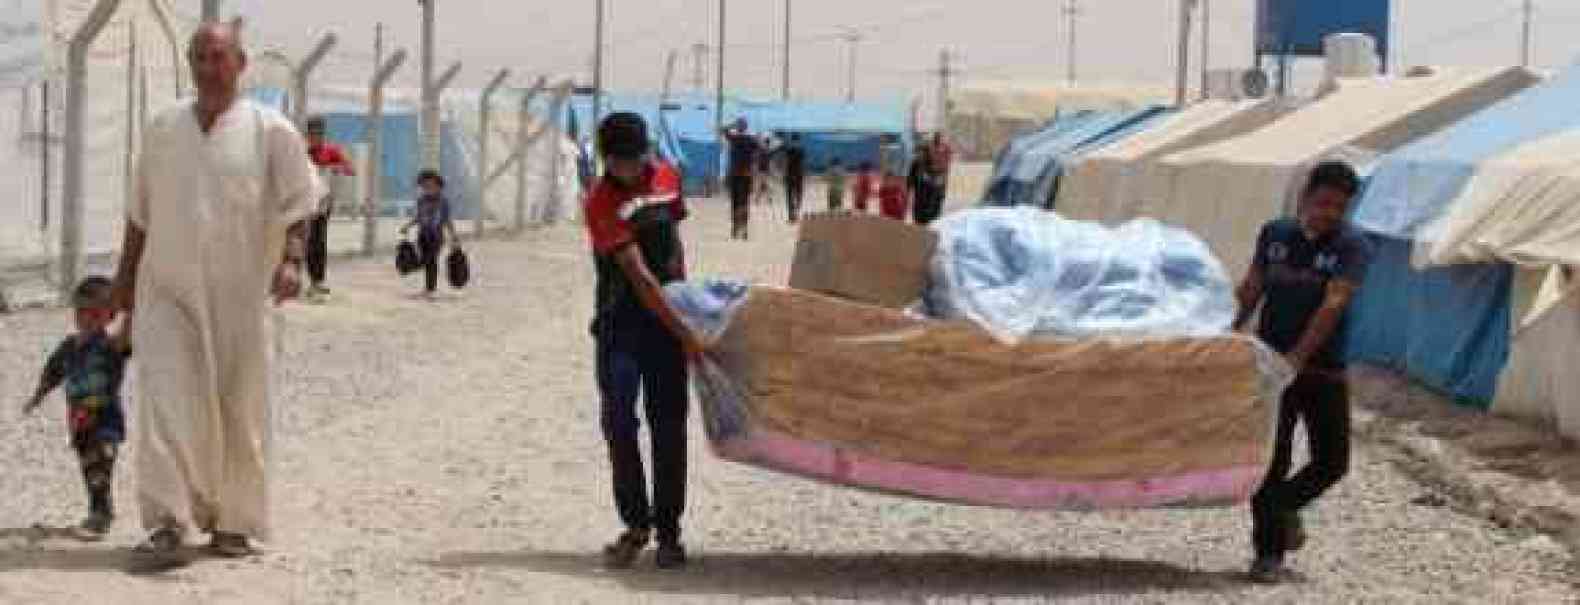 المرصد العراقي لحقوق الانسان : أعداد النازحين في مدينة الشرقاط بلغ 35 ألف شخص